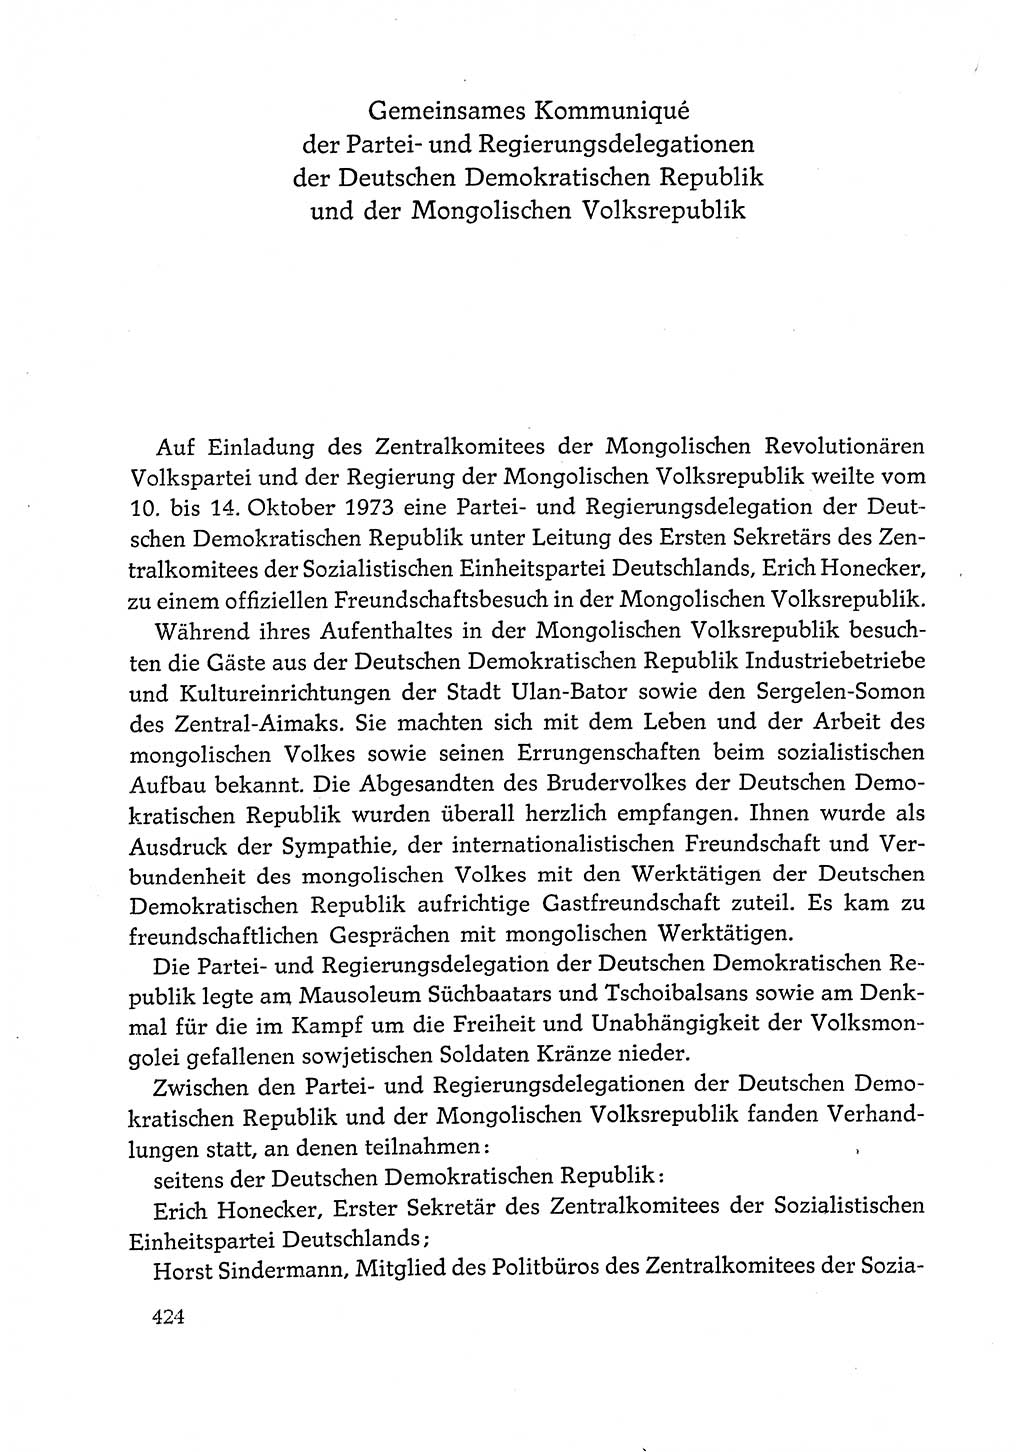 Dokumente der Sozialistischen Einheitspartei Deutschlands (SED) [Deutsche Demokratische Republik (DDR)] 1972-1973, Seite 424 (Dok. SED DDR 1972-1973, S. 424)